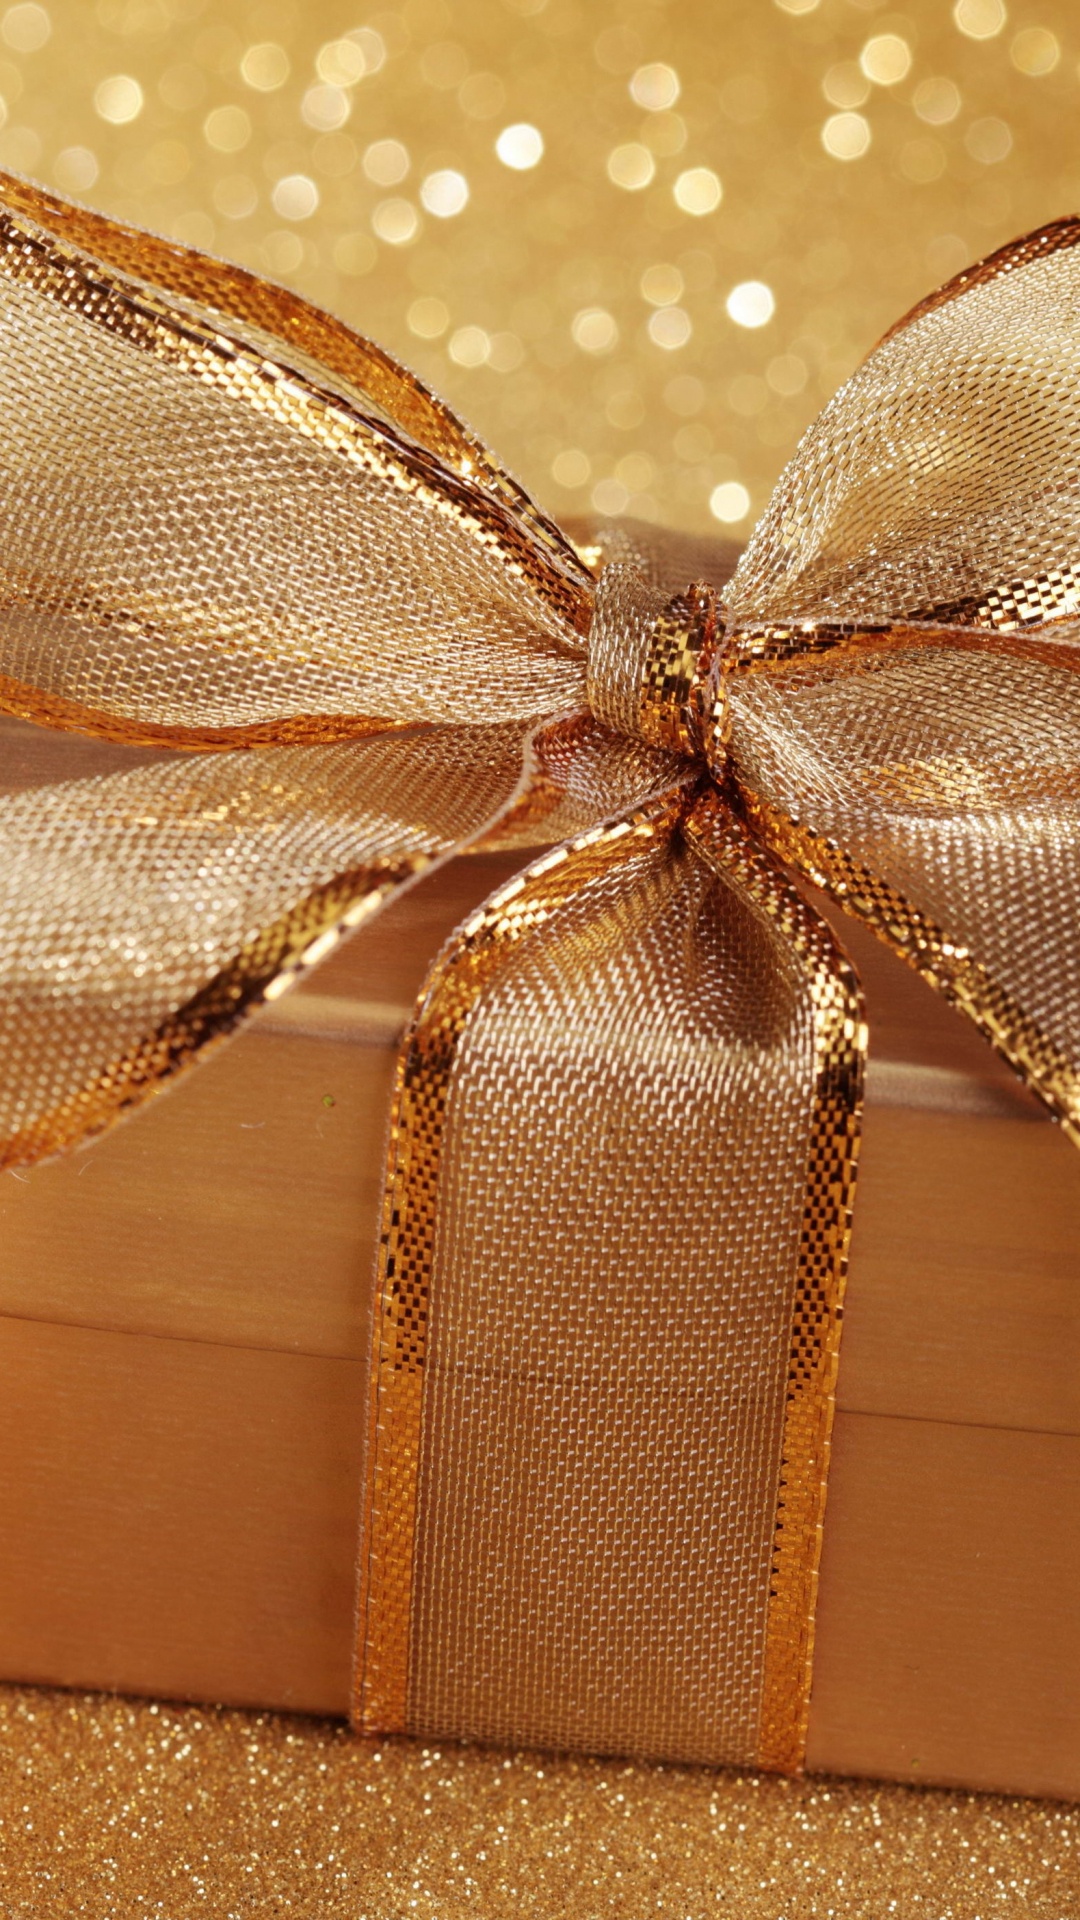 新的一年, 圣诞节那天, 假日, 丝带, 礼品包装 壁纸 1080x1920 允许